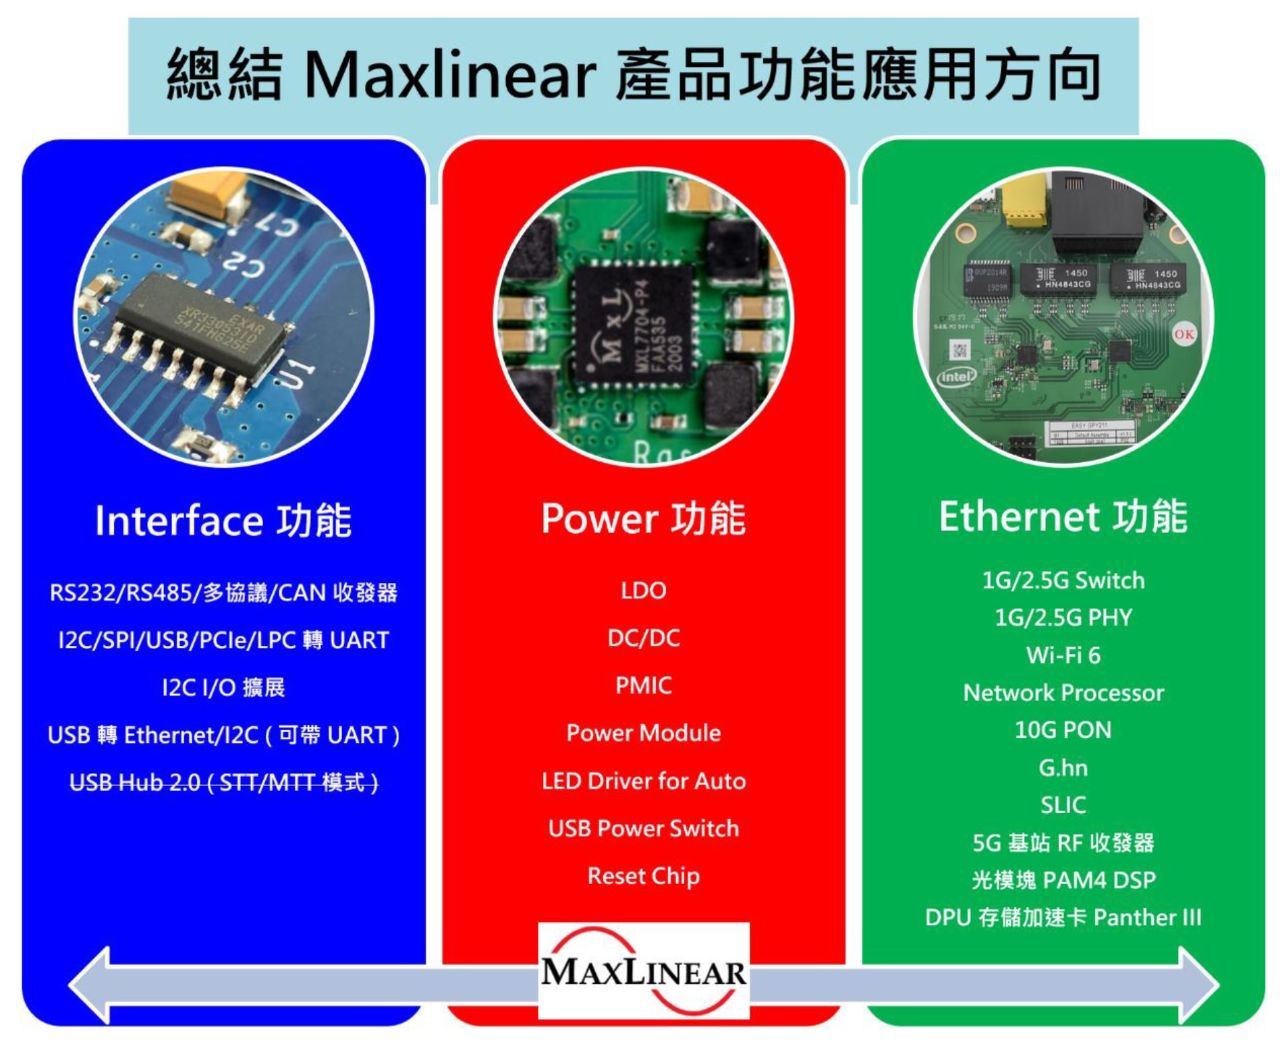 001-13-总结 Maxlinear 产品功能应用方向